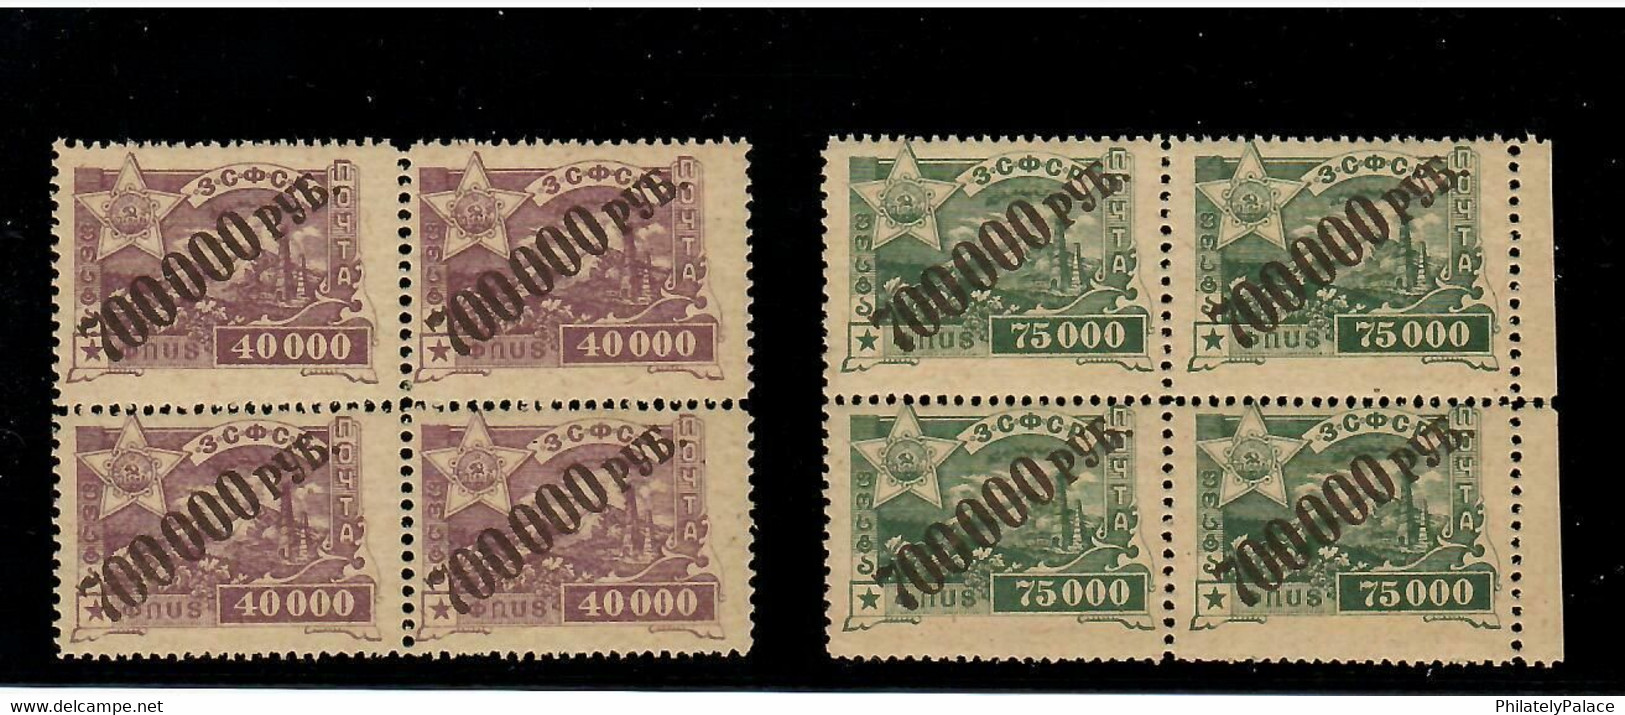 RUSSIA TRANSCAUCASIA 1923 Blocks Of 4 Full Set MNH OG RARE!!! (**) - Unused Stamps